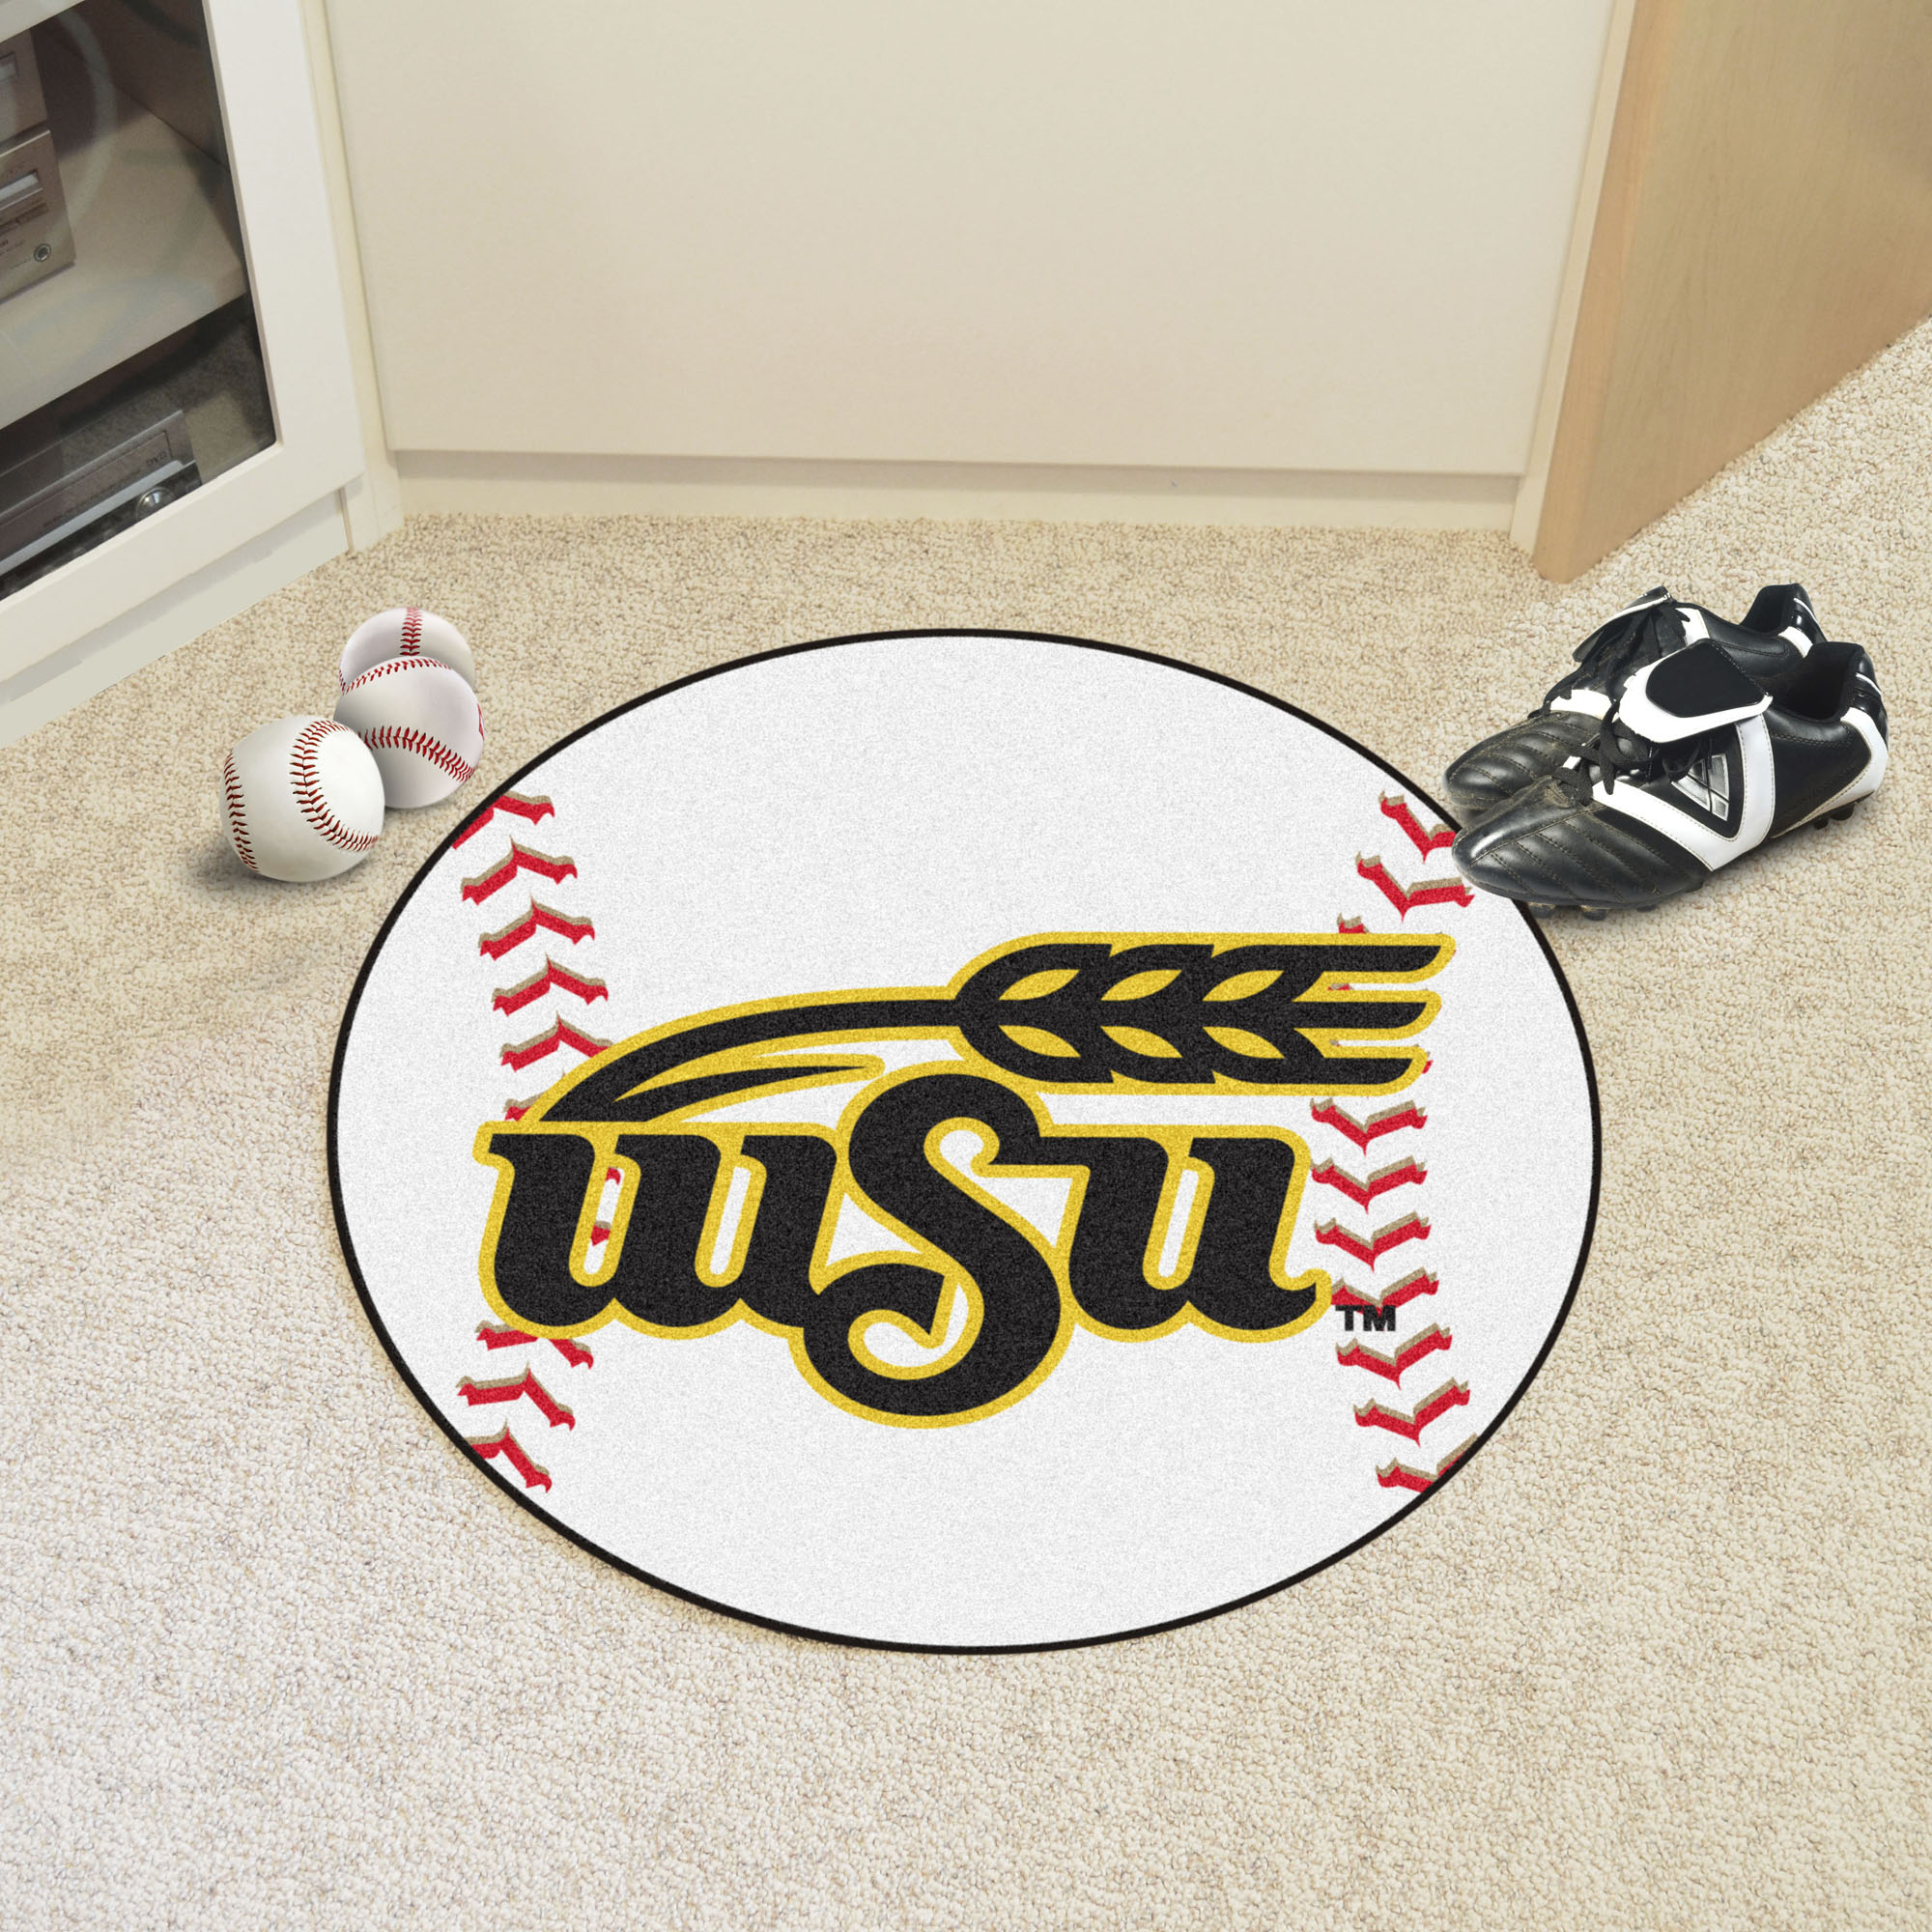 Wichita State University Ball Shaped Area Rugs (Ball Shaped Area Rugs: Baseball)